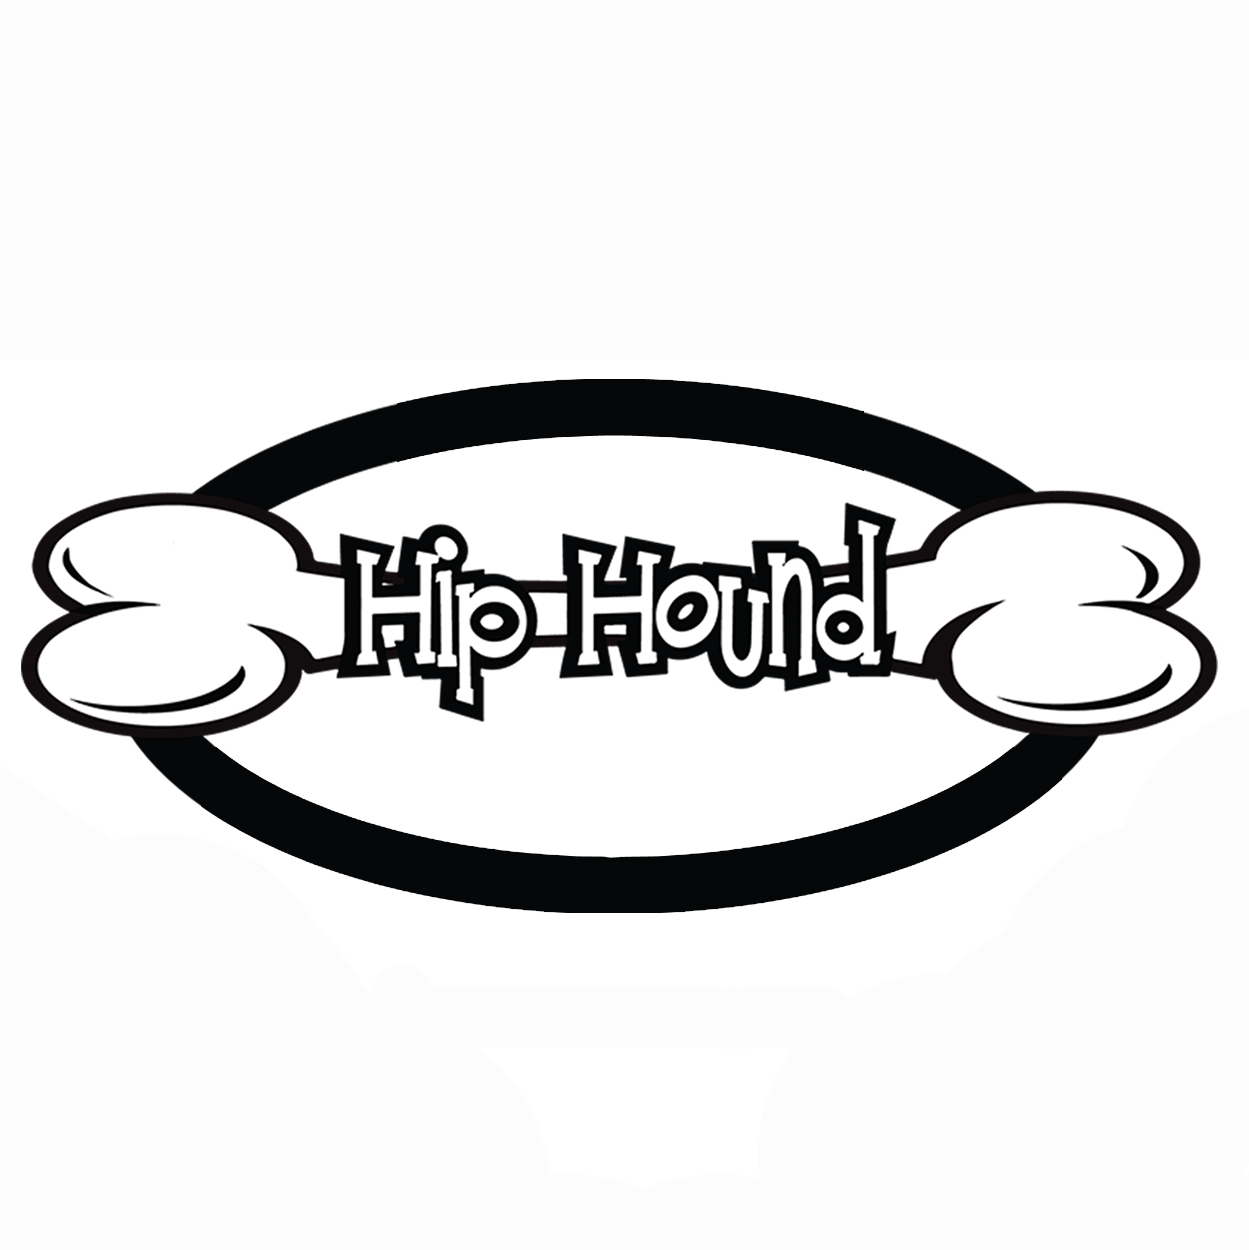 Company logo of Hip Hound